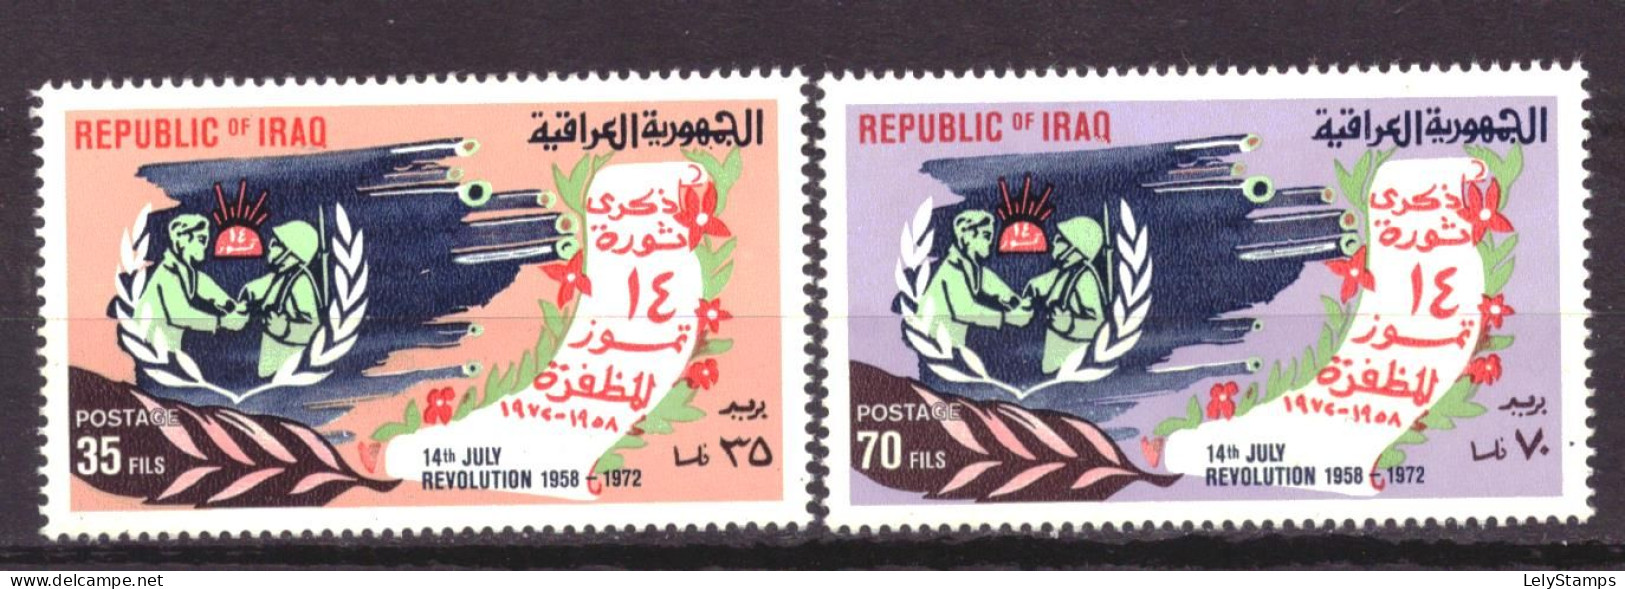 Irak / Iraq 739 & 740 MNH ** 14 July Revolution (1972) - Iraq